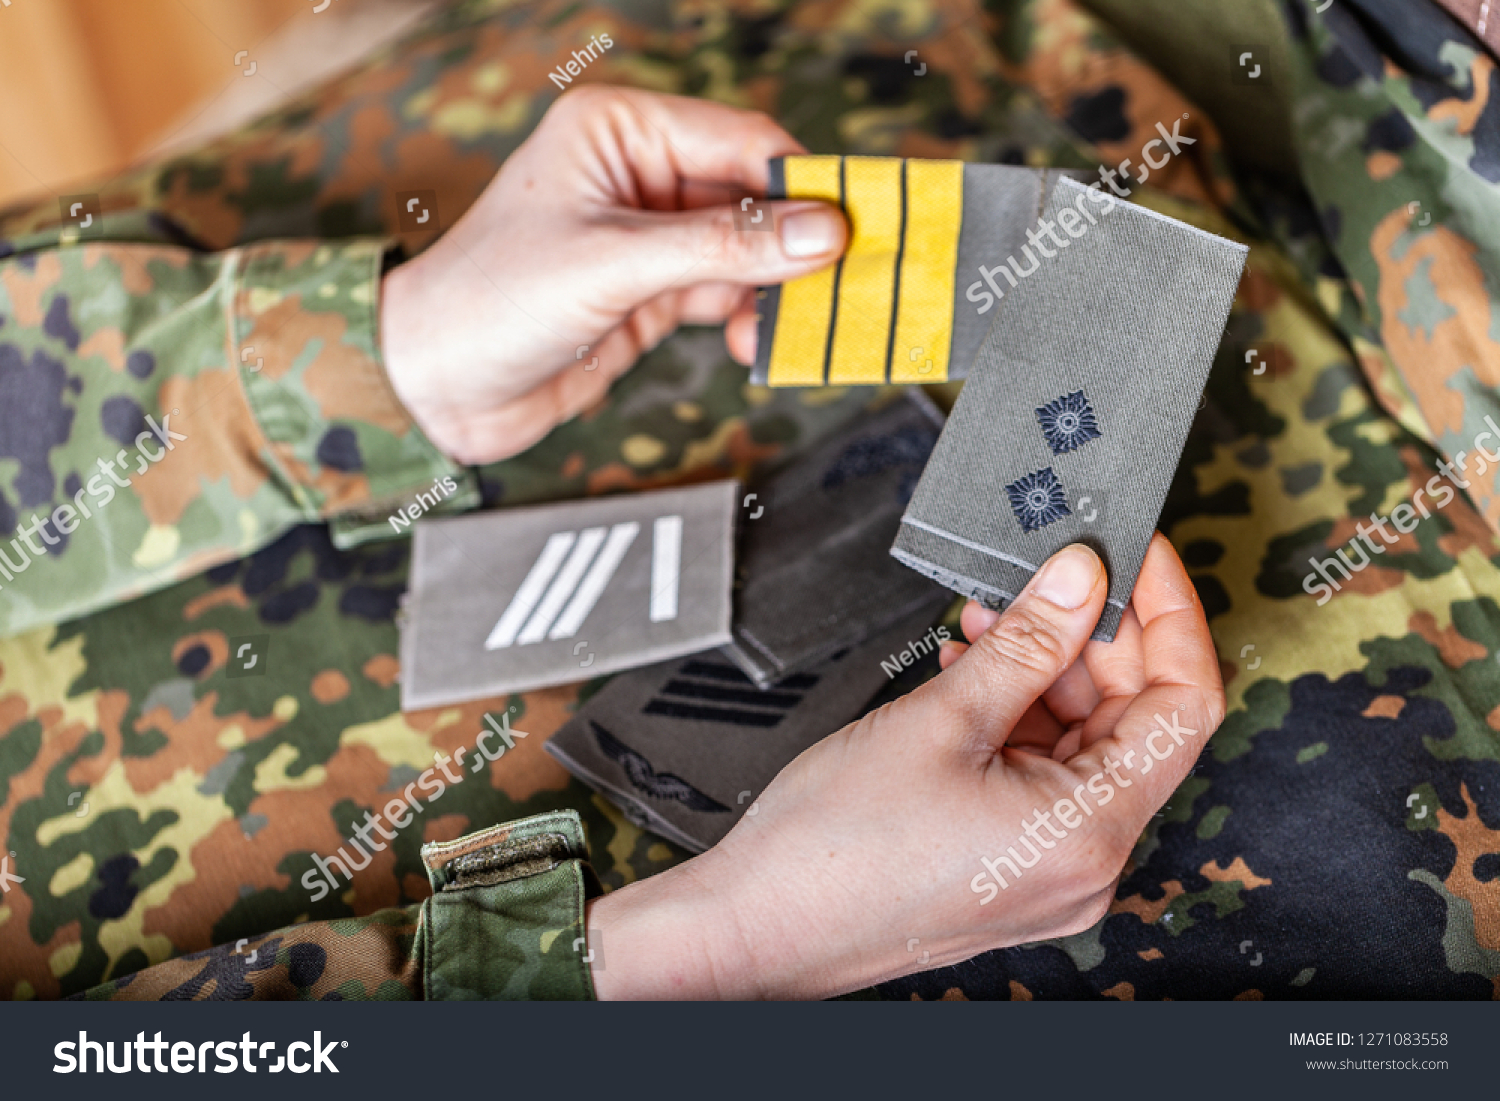 german shoulder ranks on a camouflage background #1271083558